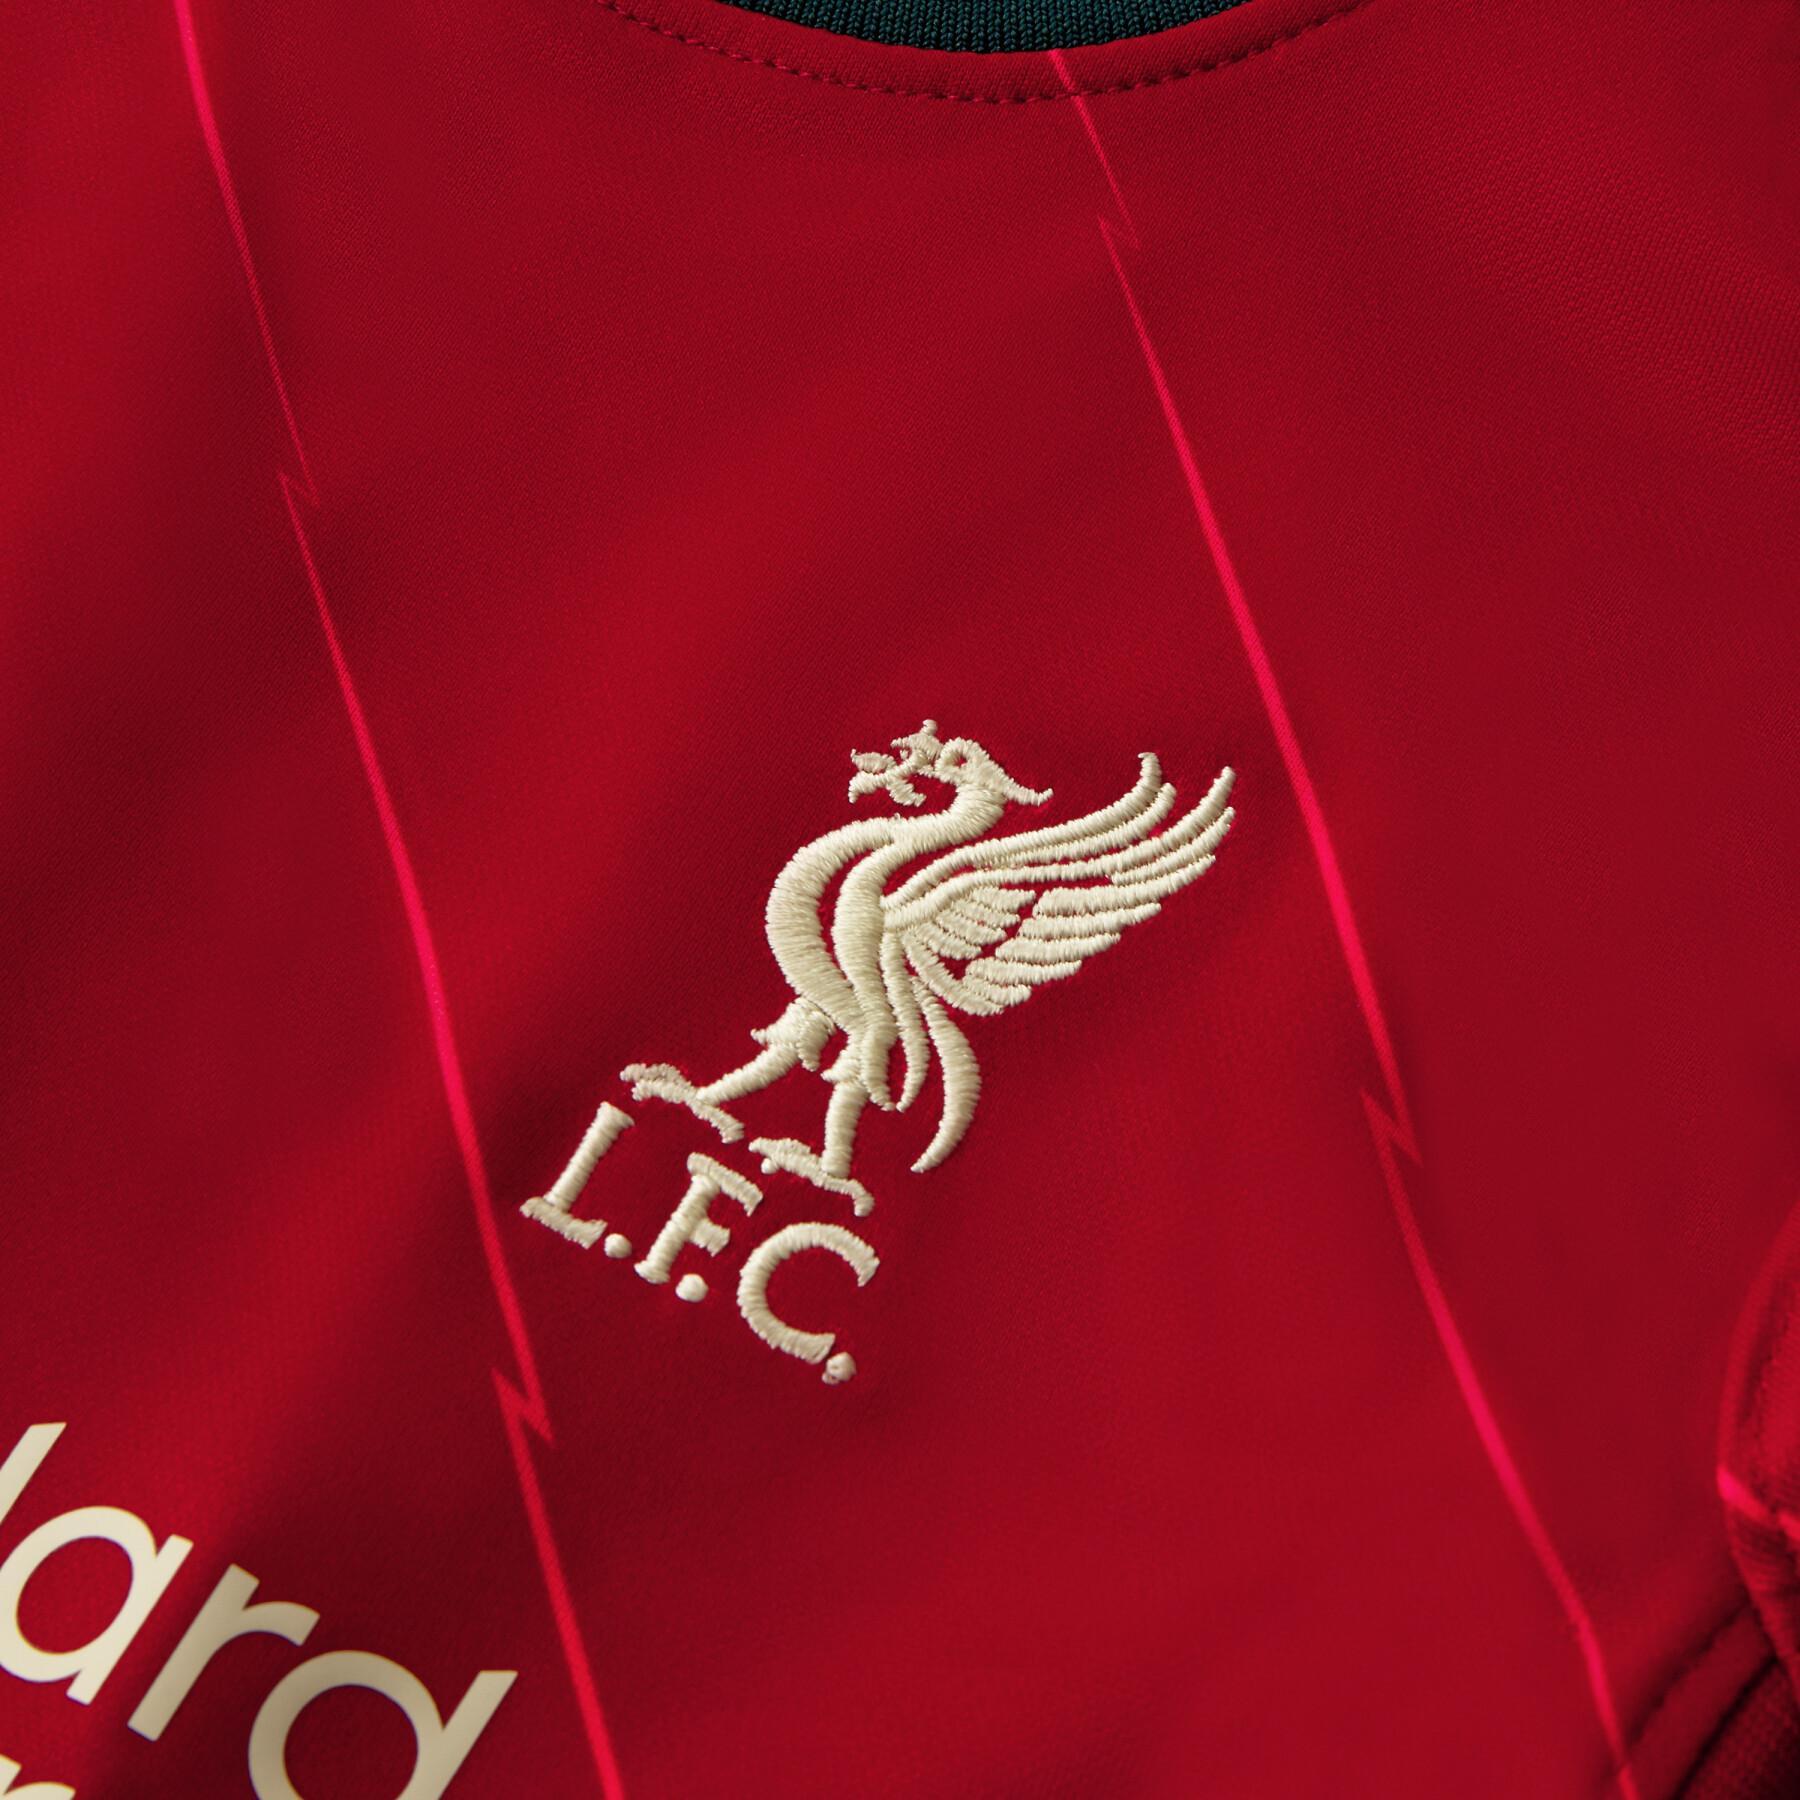 Kit doméstico para bebés Liverpool FC 2021/22